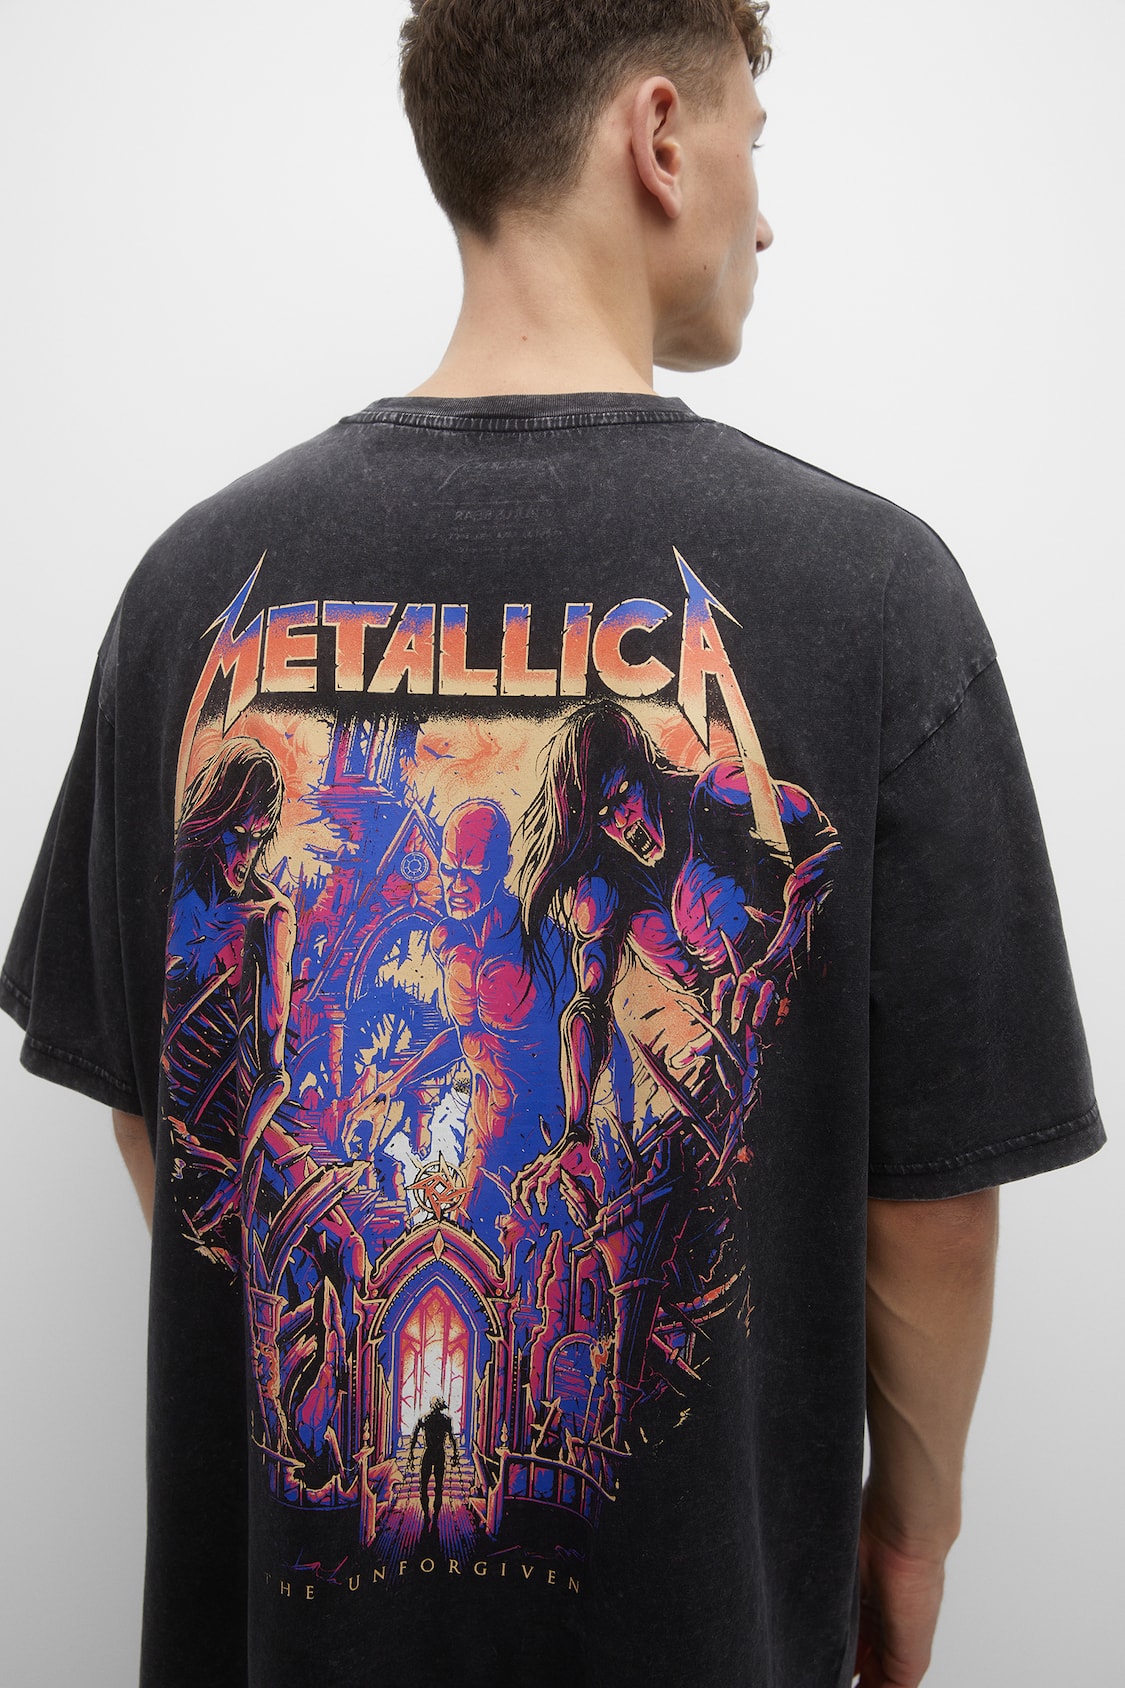 kondensator Ledsager Udvej Faded Metallica T-shirt - pull&bear